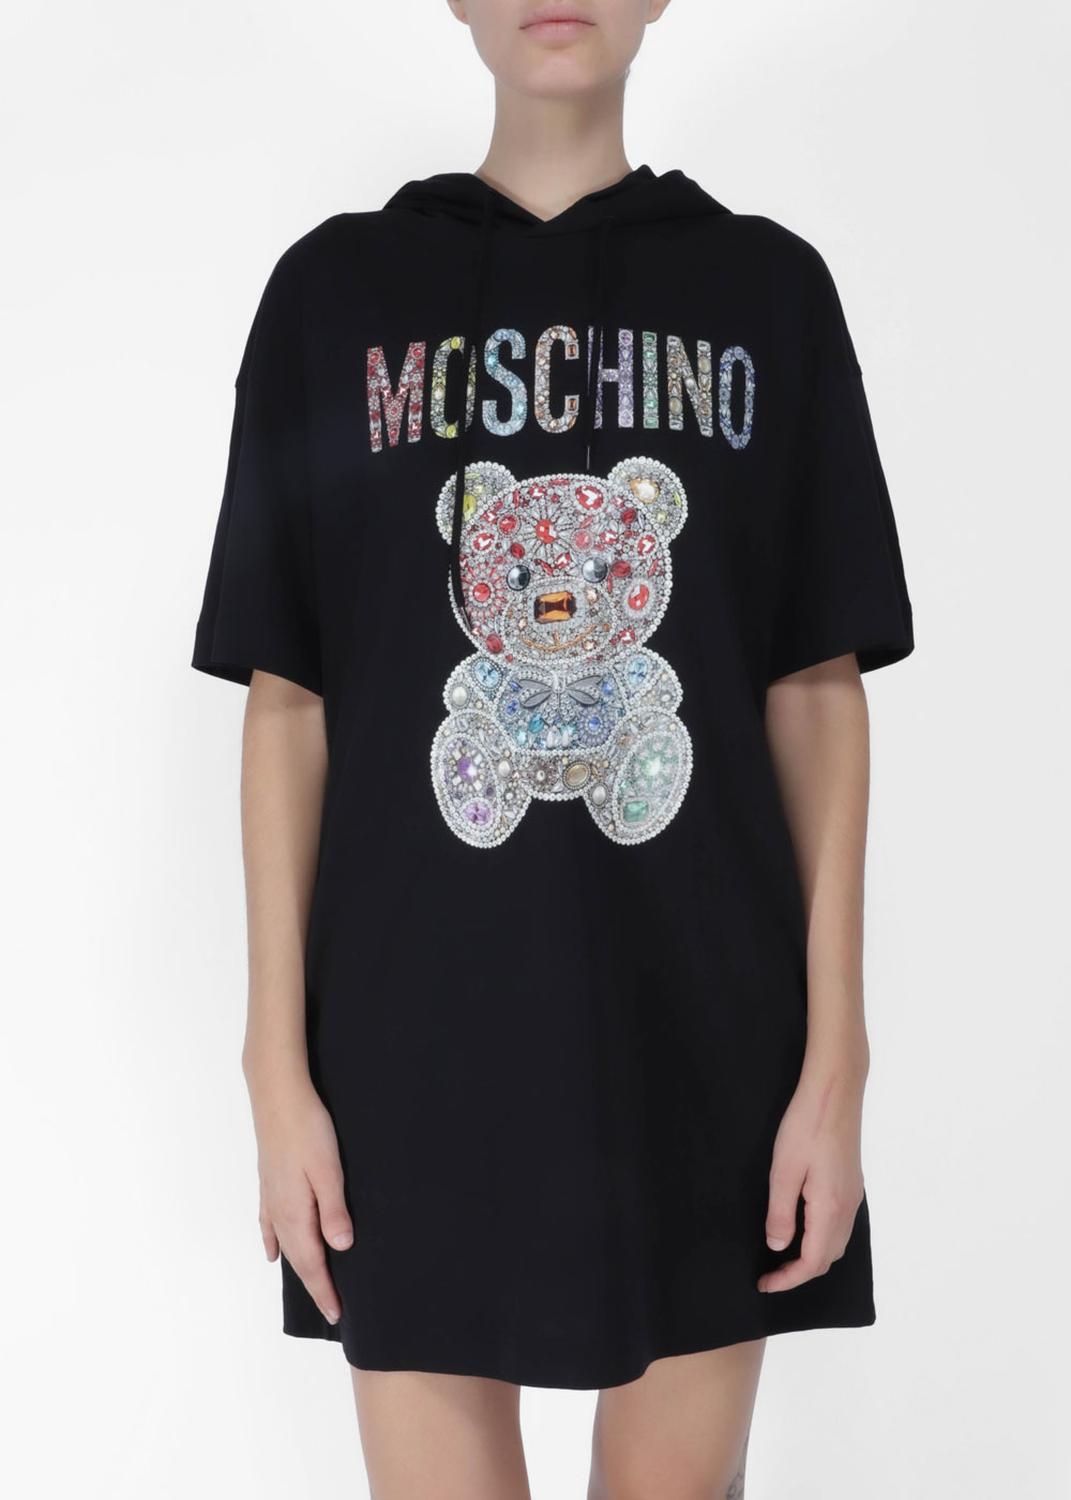 Moschino vestido Teddy Bear MSC-V0463